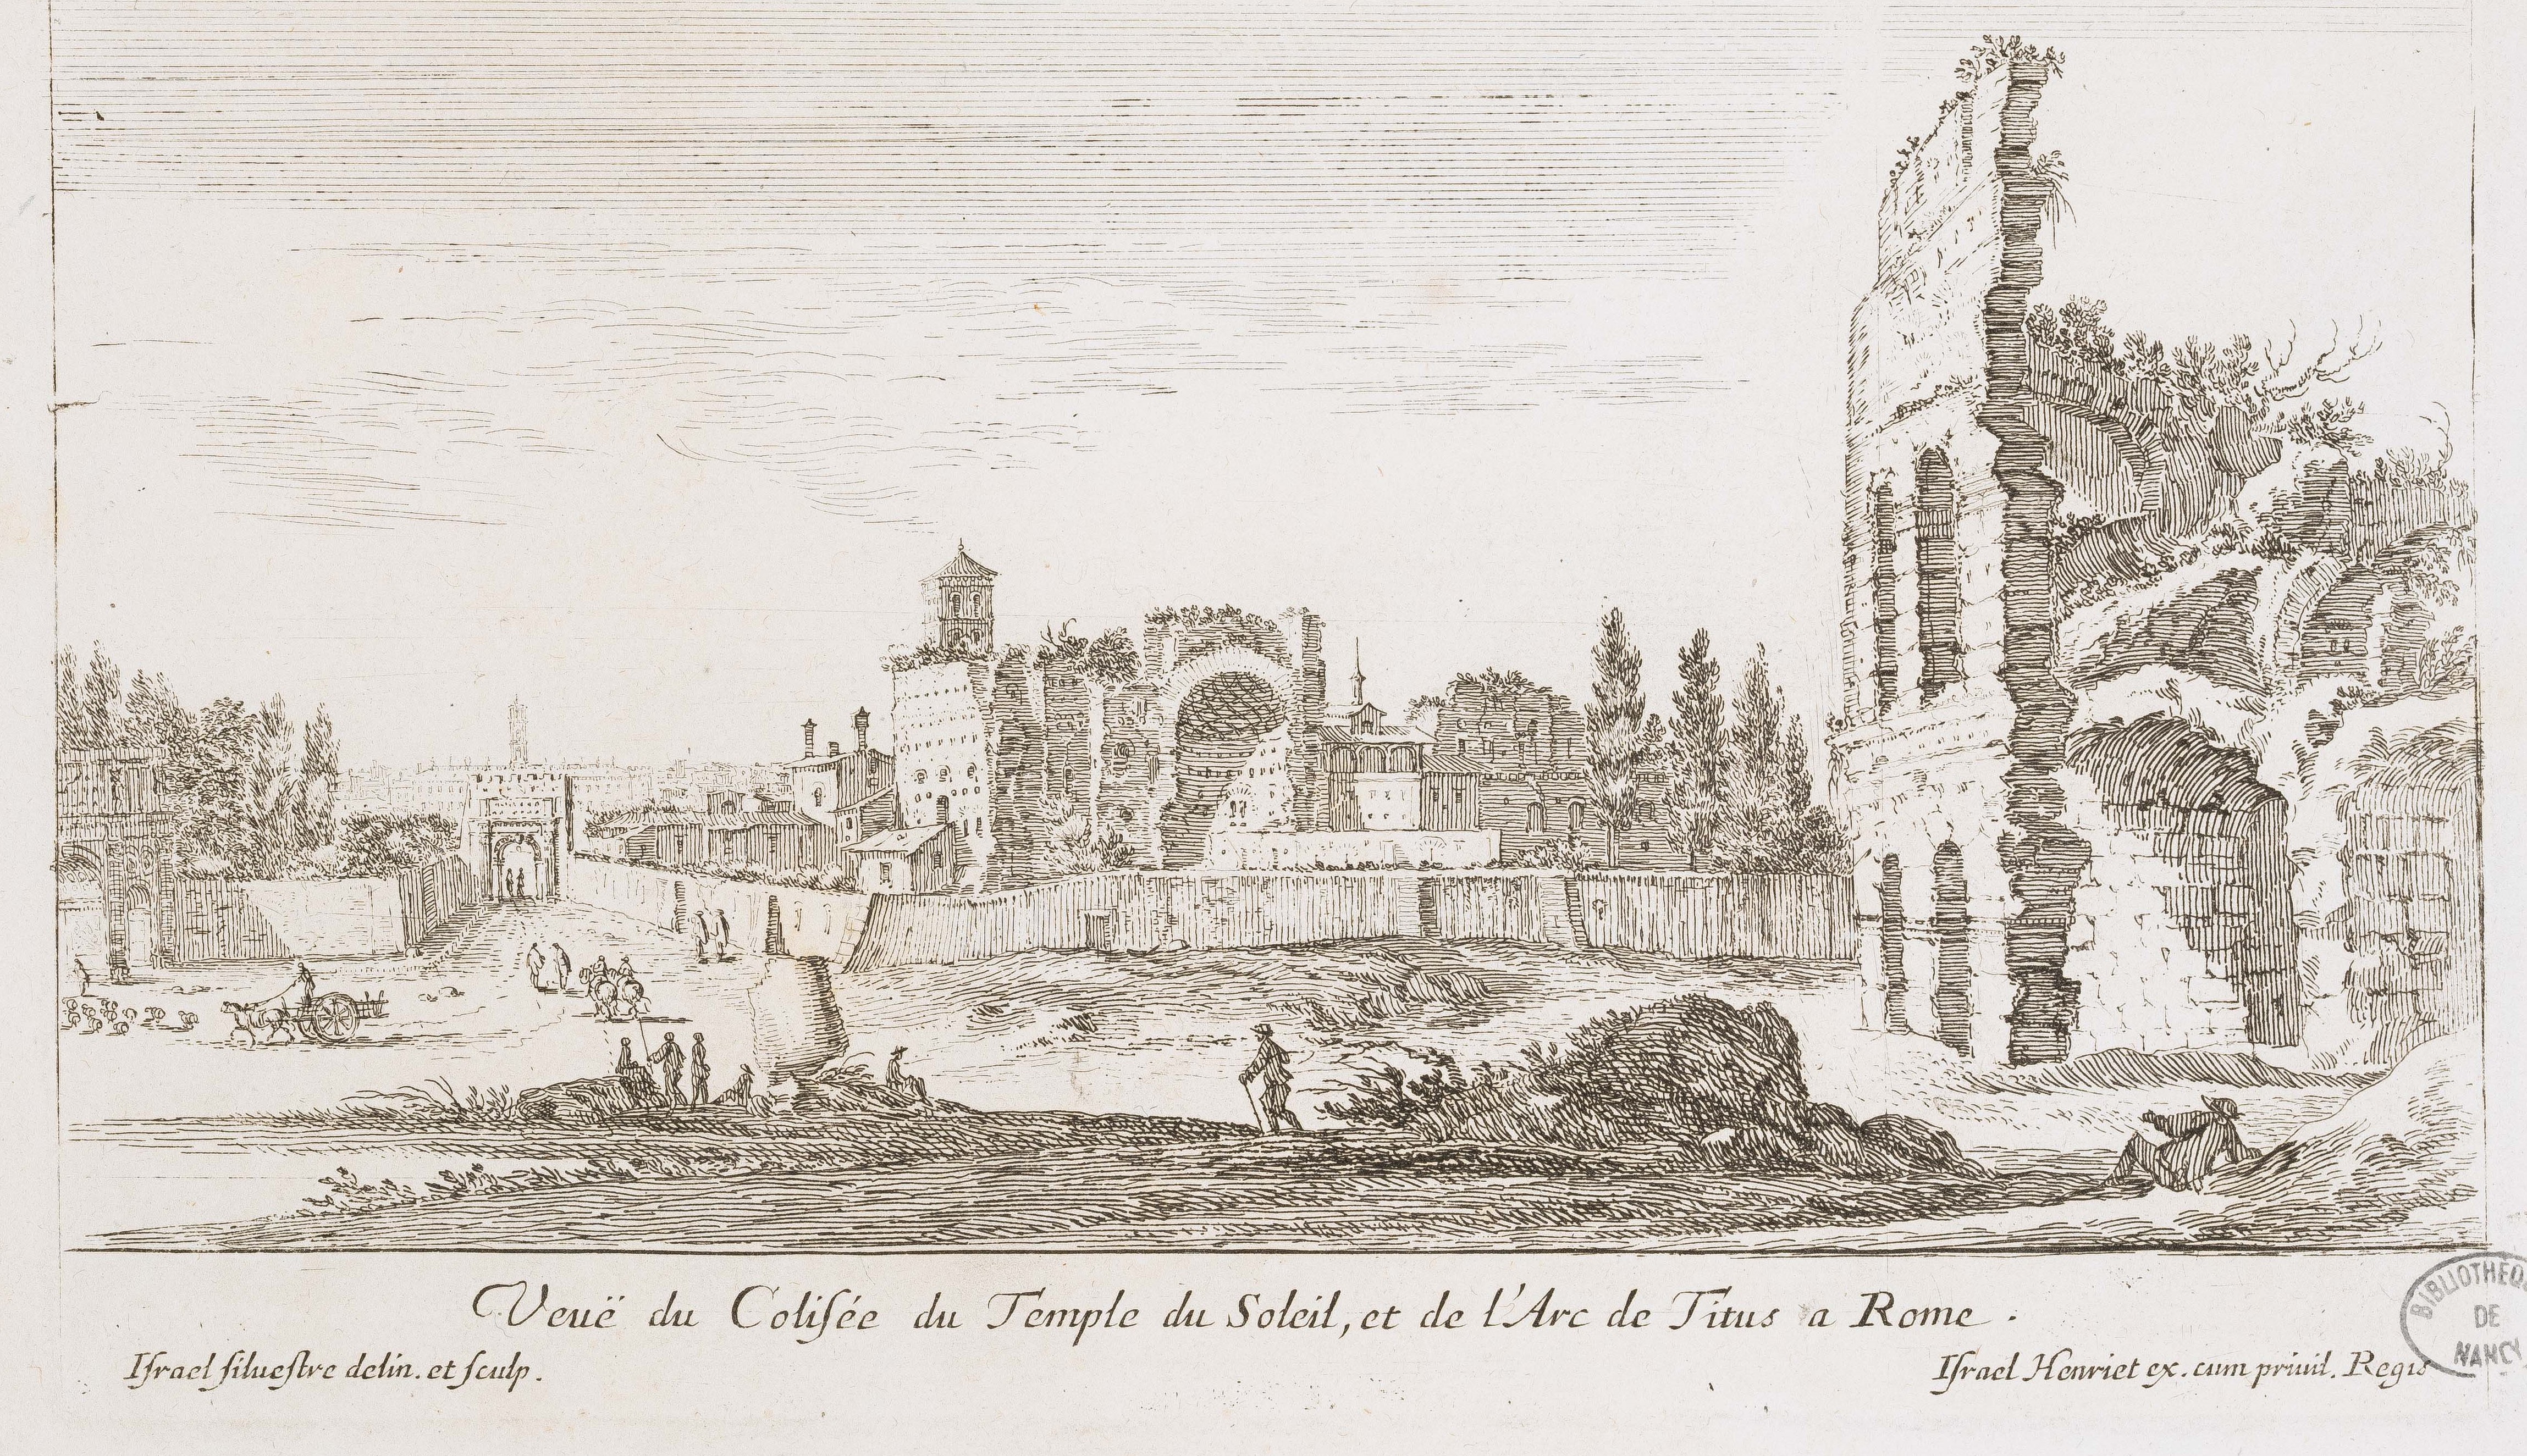 Israël Silvestre : Veuë du Colisée du Temple du Soleil, et de l'Arc de Titus a Rome. (Vue des ruines de l'arc de Titus, près le Colisée. )